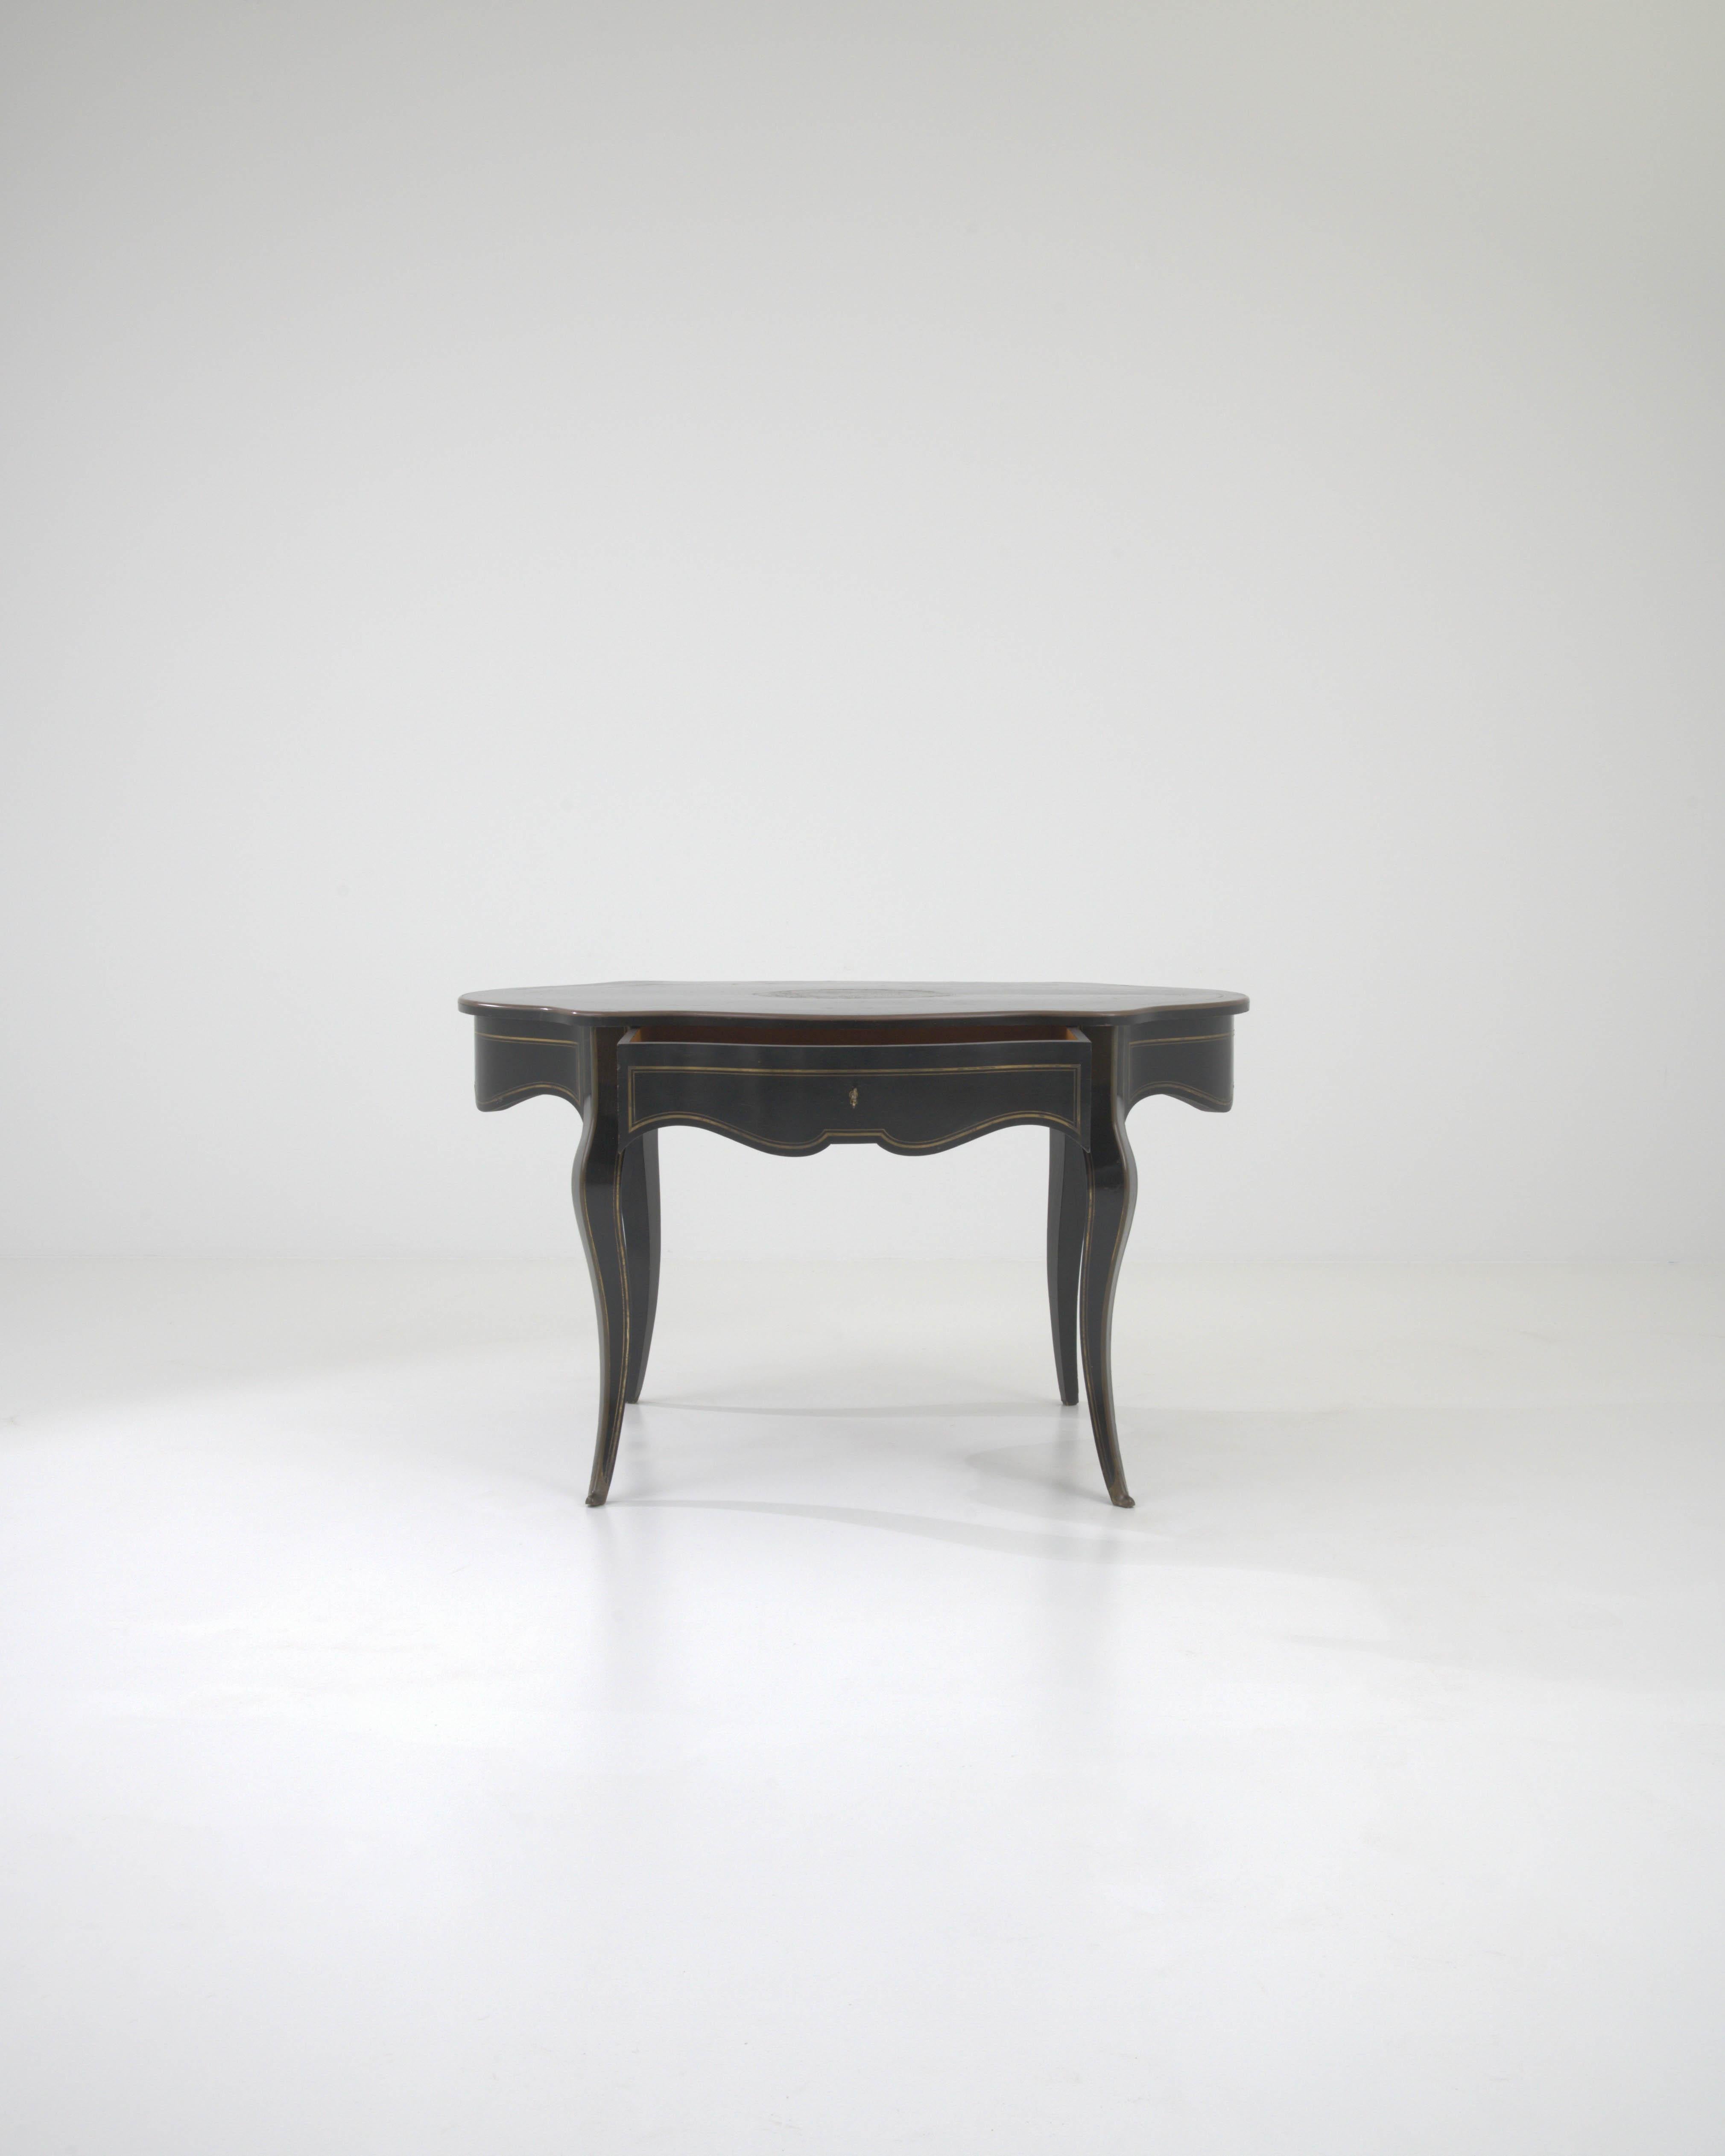 Versetzen Sie sich in das 19. Jahrhundert mit diesem exquisiten französischen Beistelltisch aus Holz mit seiner ursprünglichen Patina. Der elegante schwarze Tisch verfügt über eine Schürze mit Wellenschliff, die das gesamte Möbelstück anmutig umgibt